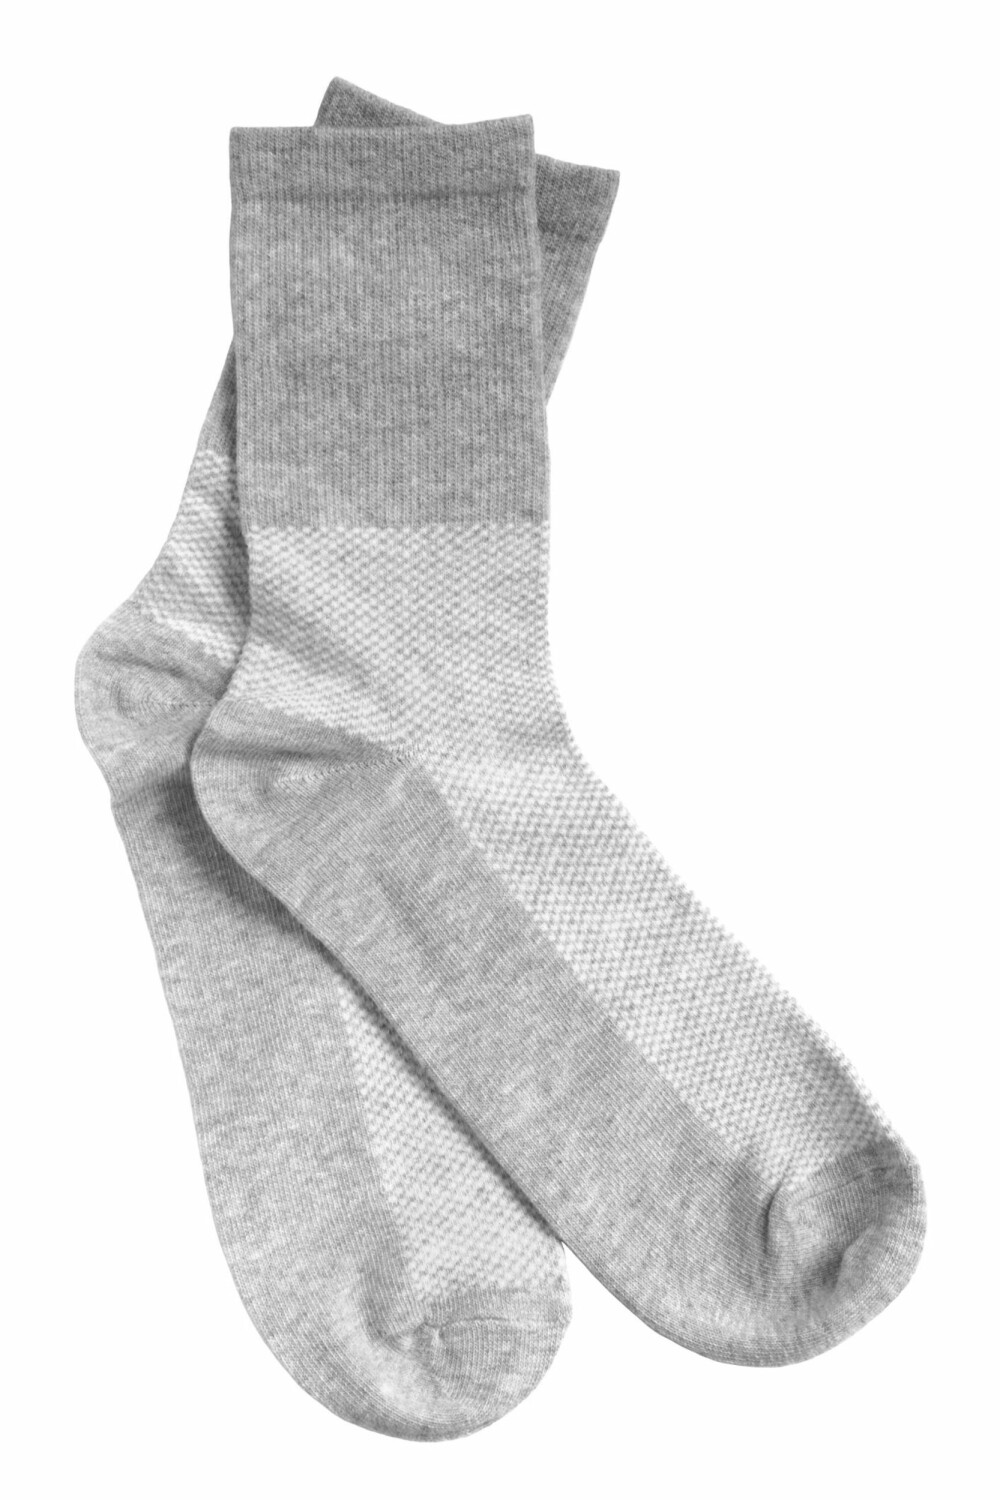 HVA ER BEST?: Sjekk hva sokkene egentlig er laget av for å sørge for best komfort og passform.